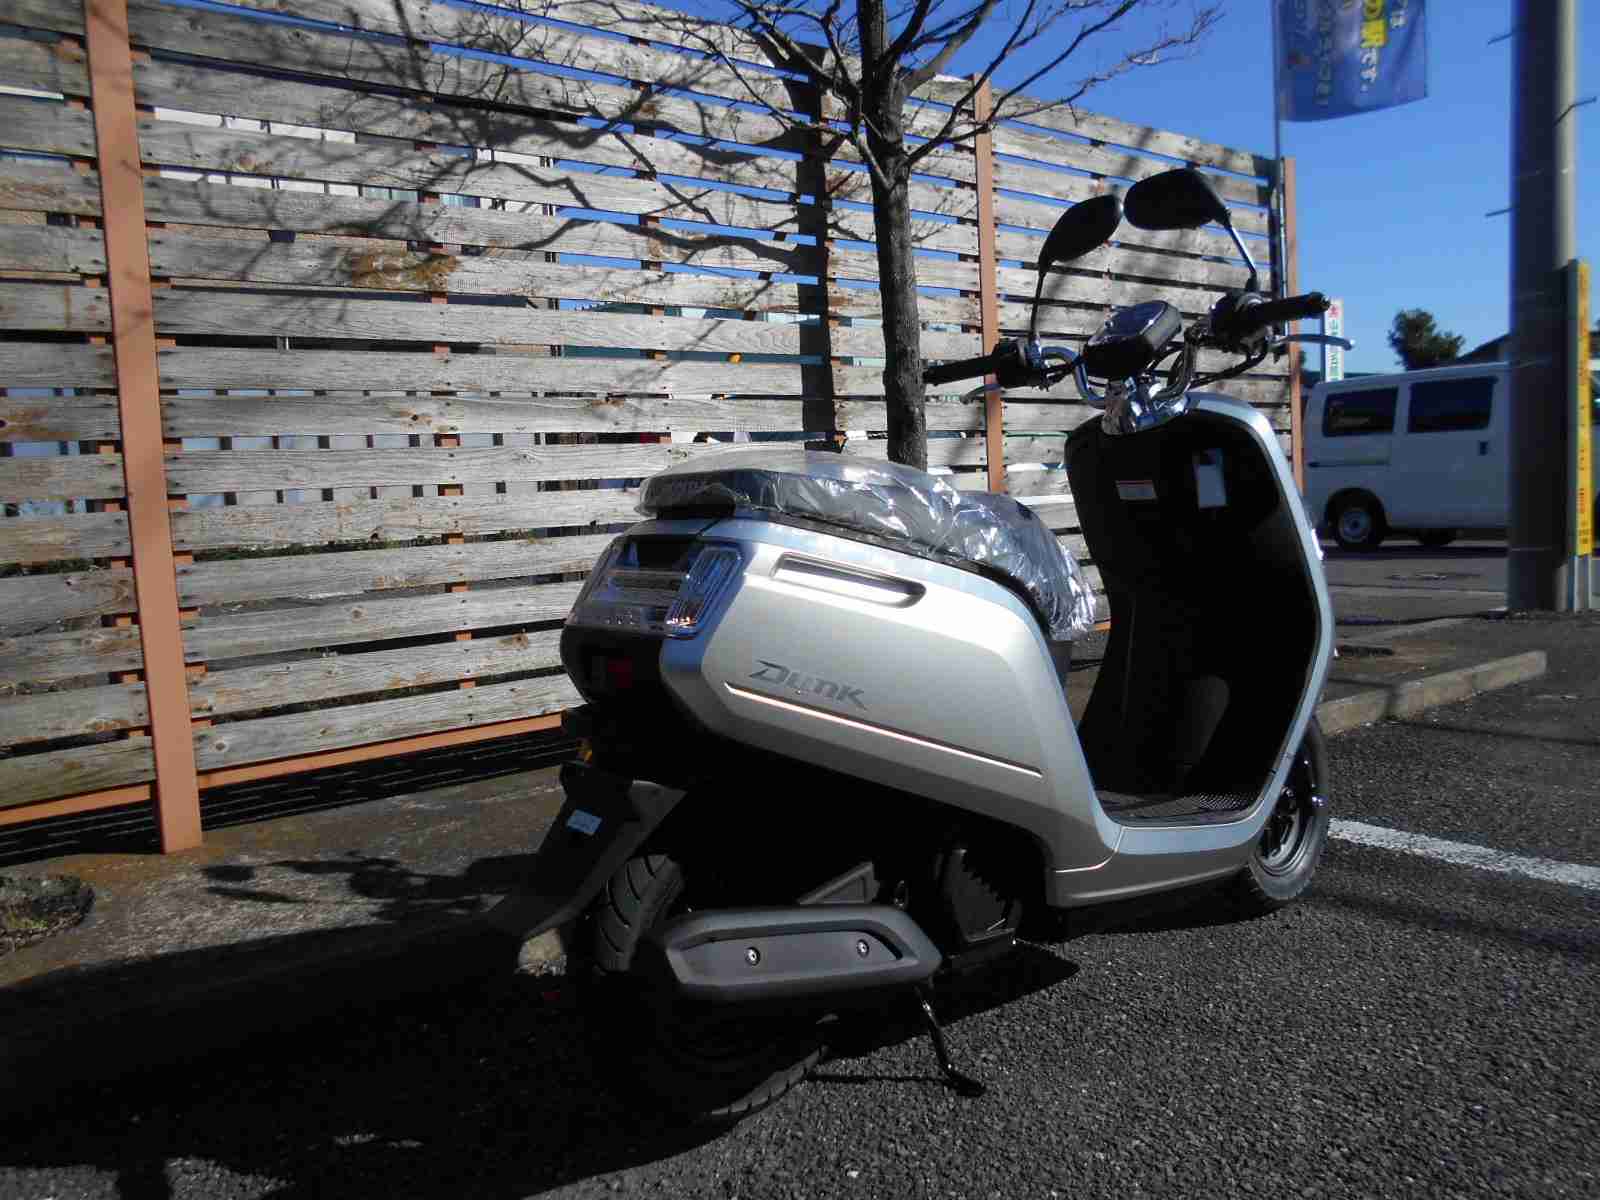 ホンダ Dunk バイク探し U Media ユーメディア 中古バイク 新車バイク探しの決定版 神奈川 東京でバイク探すならユーメディア